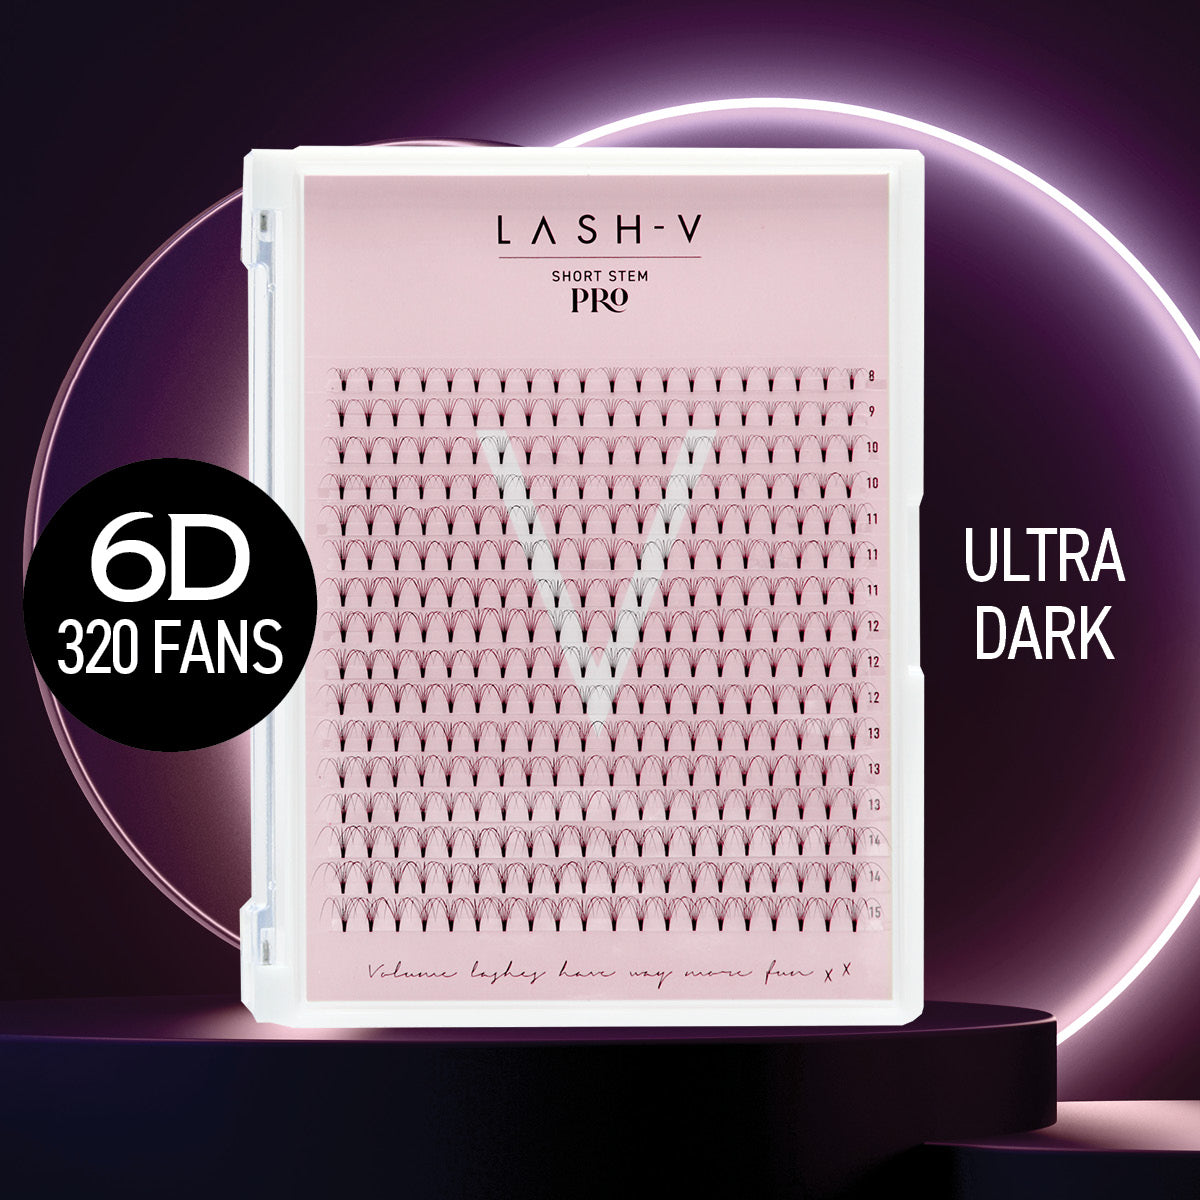 6D Short Stem Pro - Ultra Dark Fans - LASH V